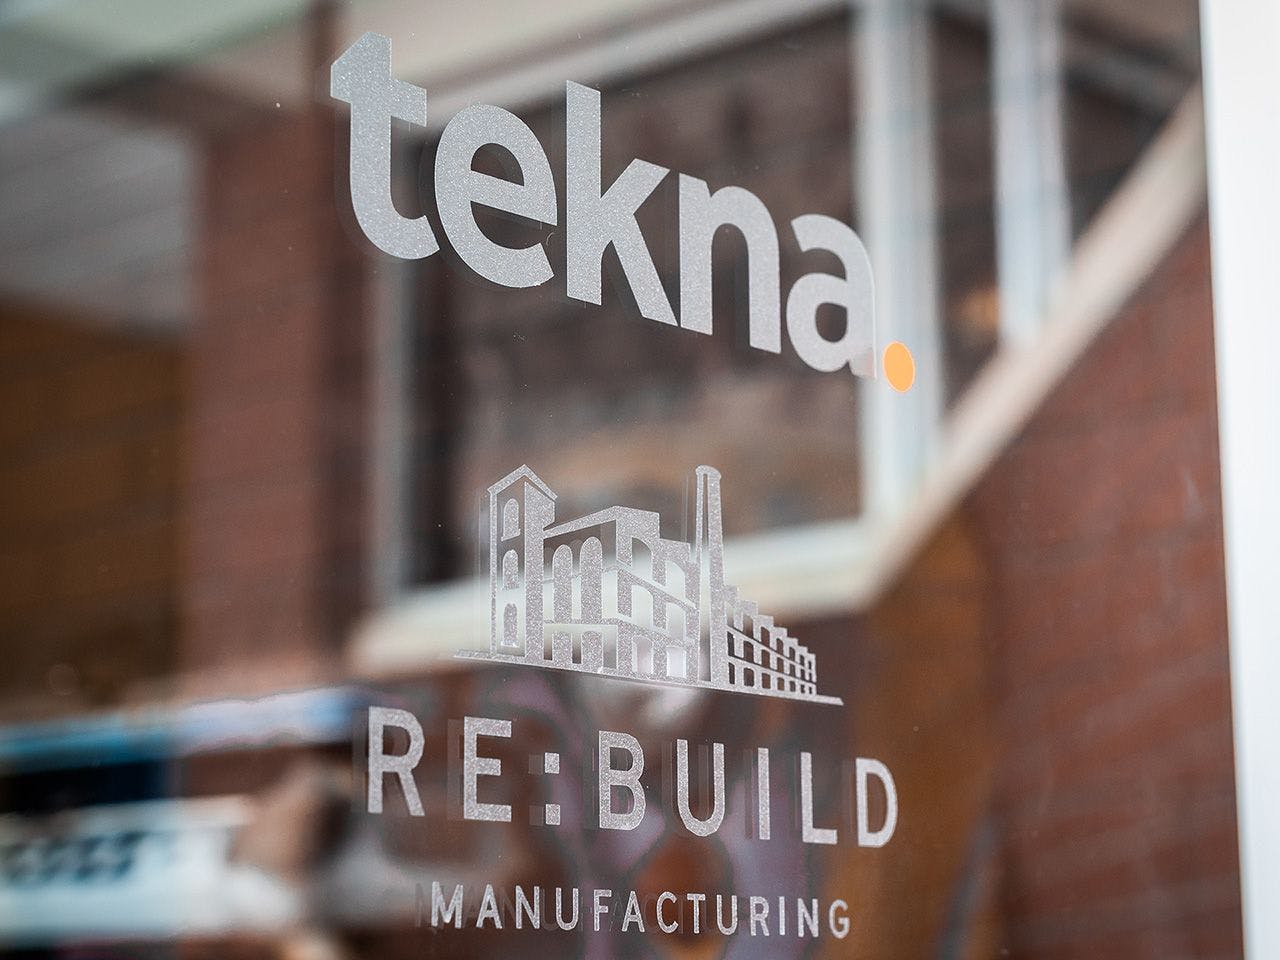 Tekna Re:Build vinyl sign on glass door